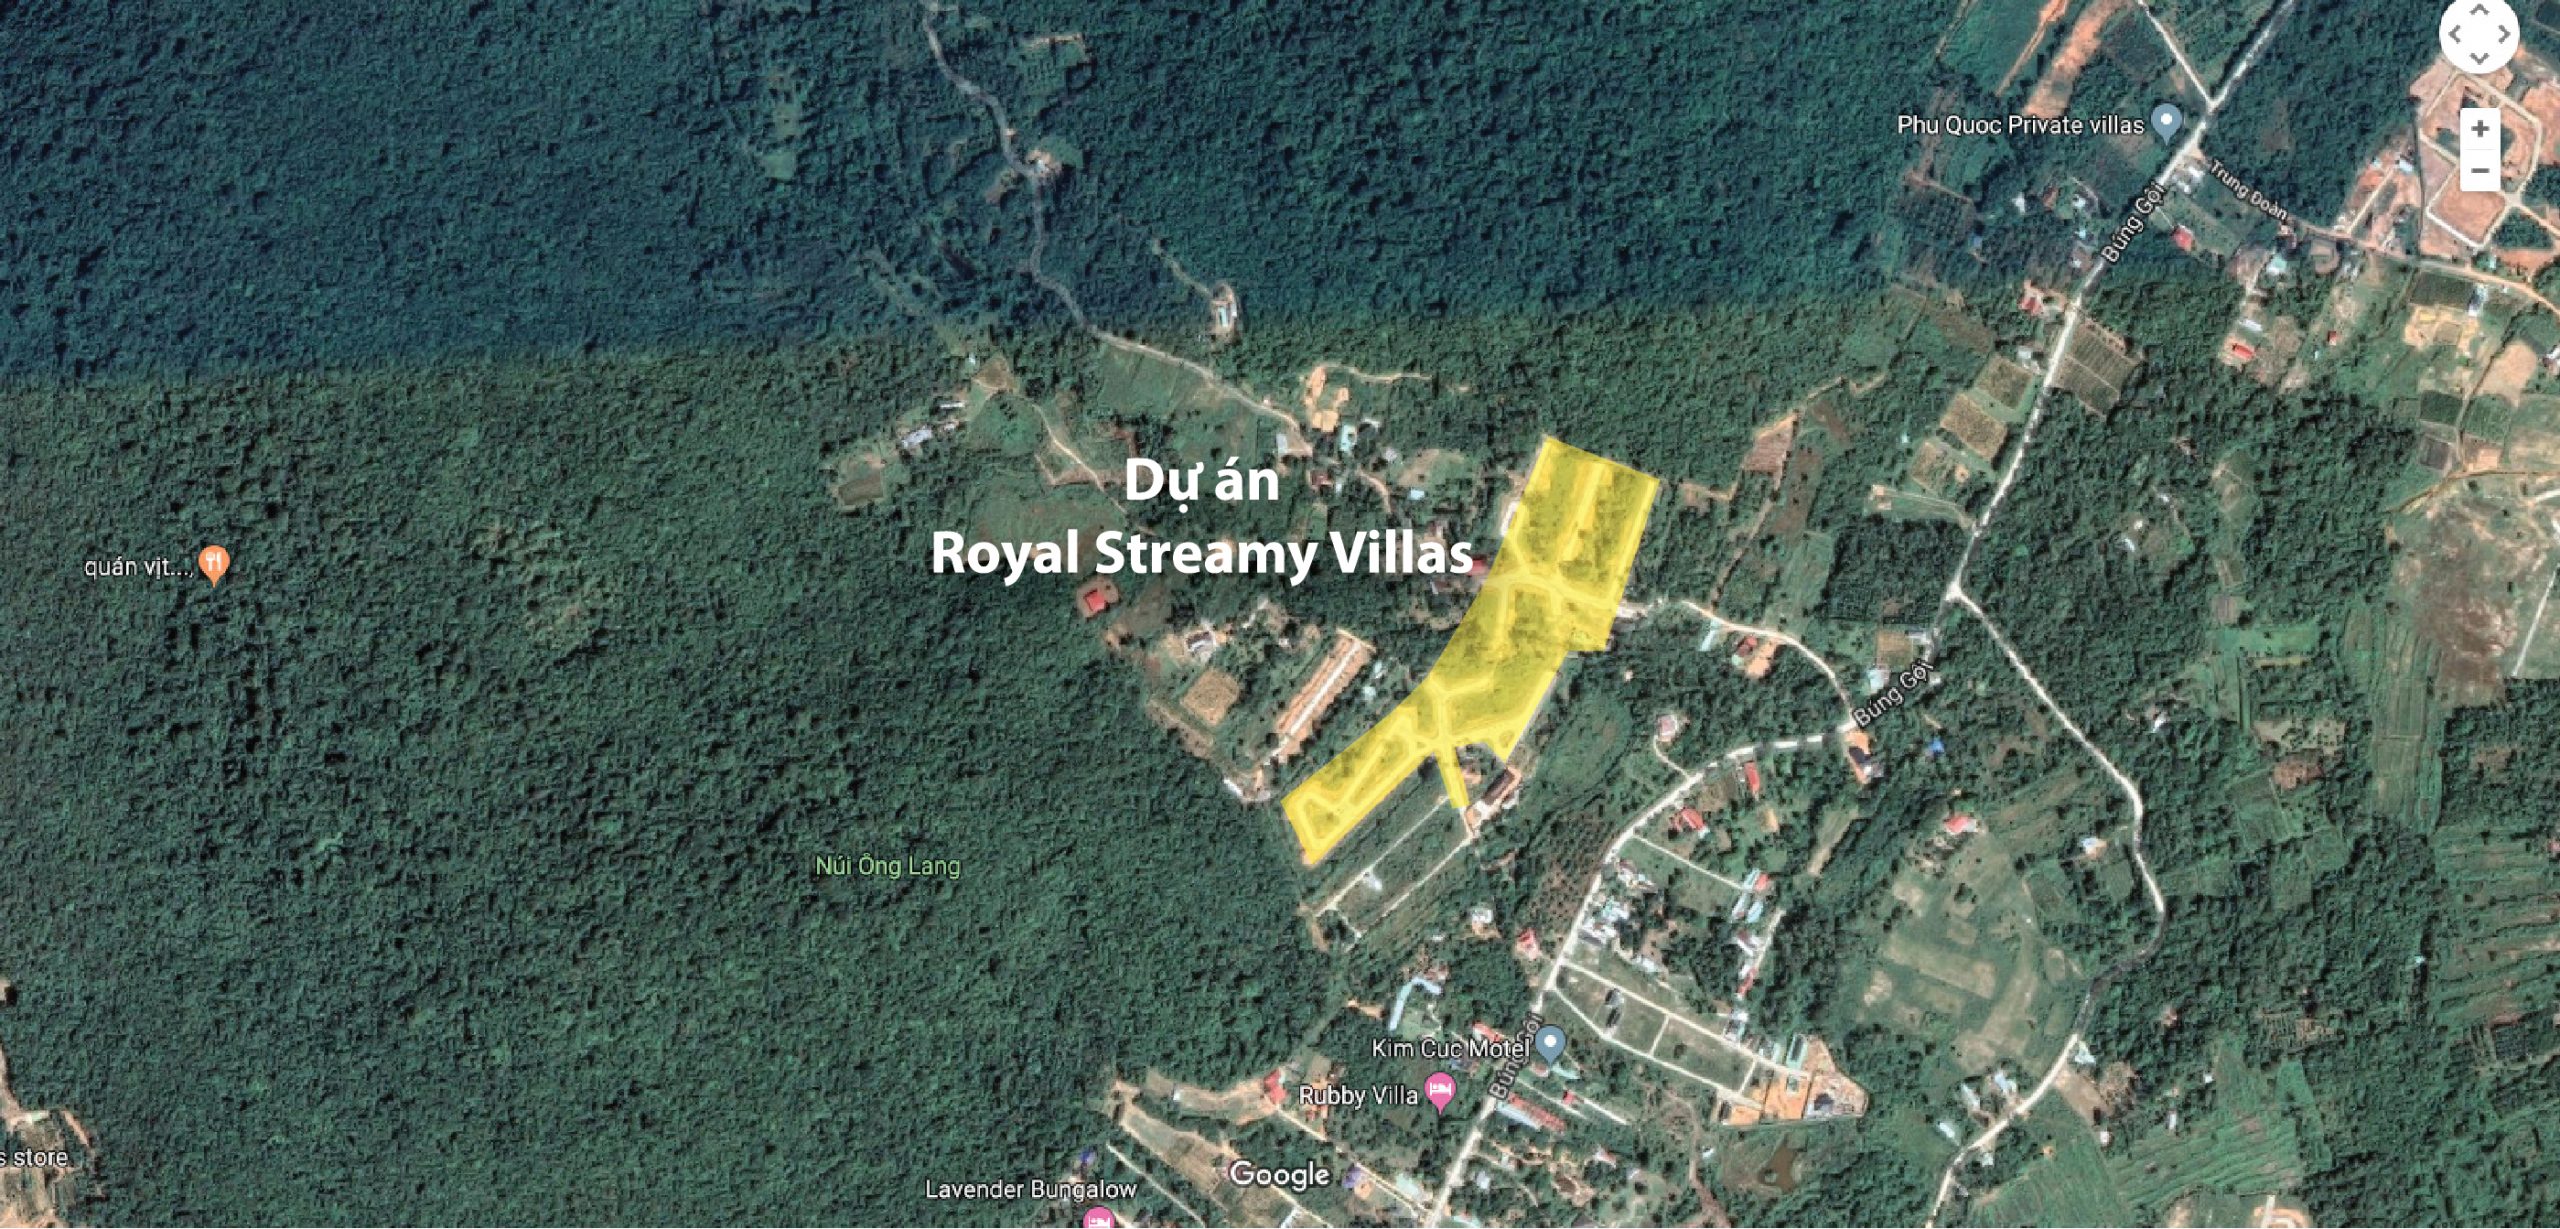 Royal Stream Villas – Dự án đất ở sở hữu lâu dài hot nhất Phú Quốc hiện tại. Giá chỉ 1x triệu/m2